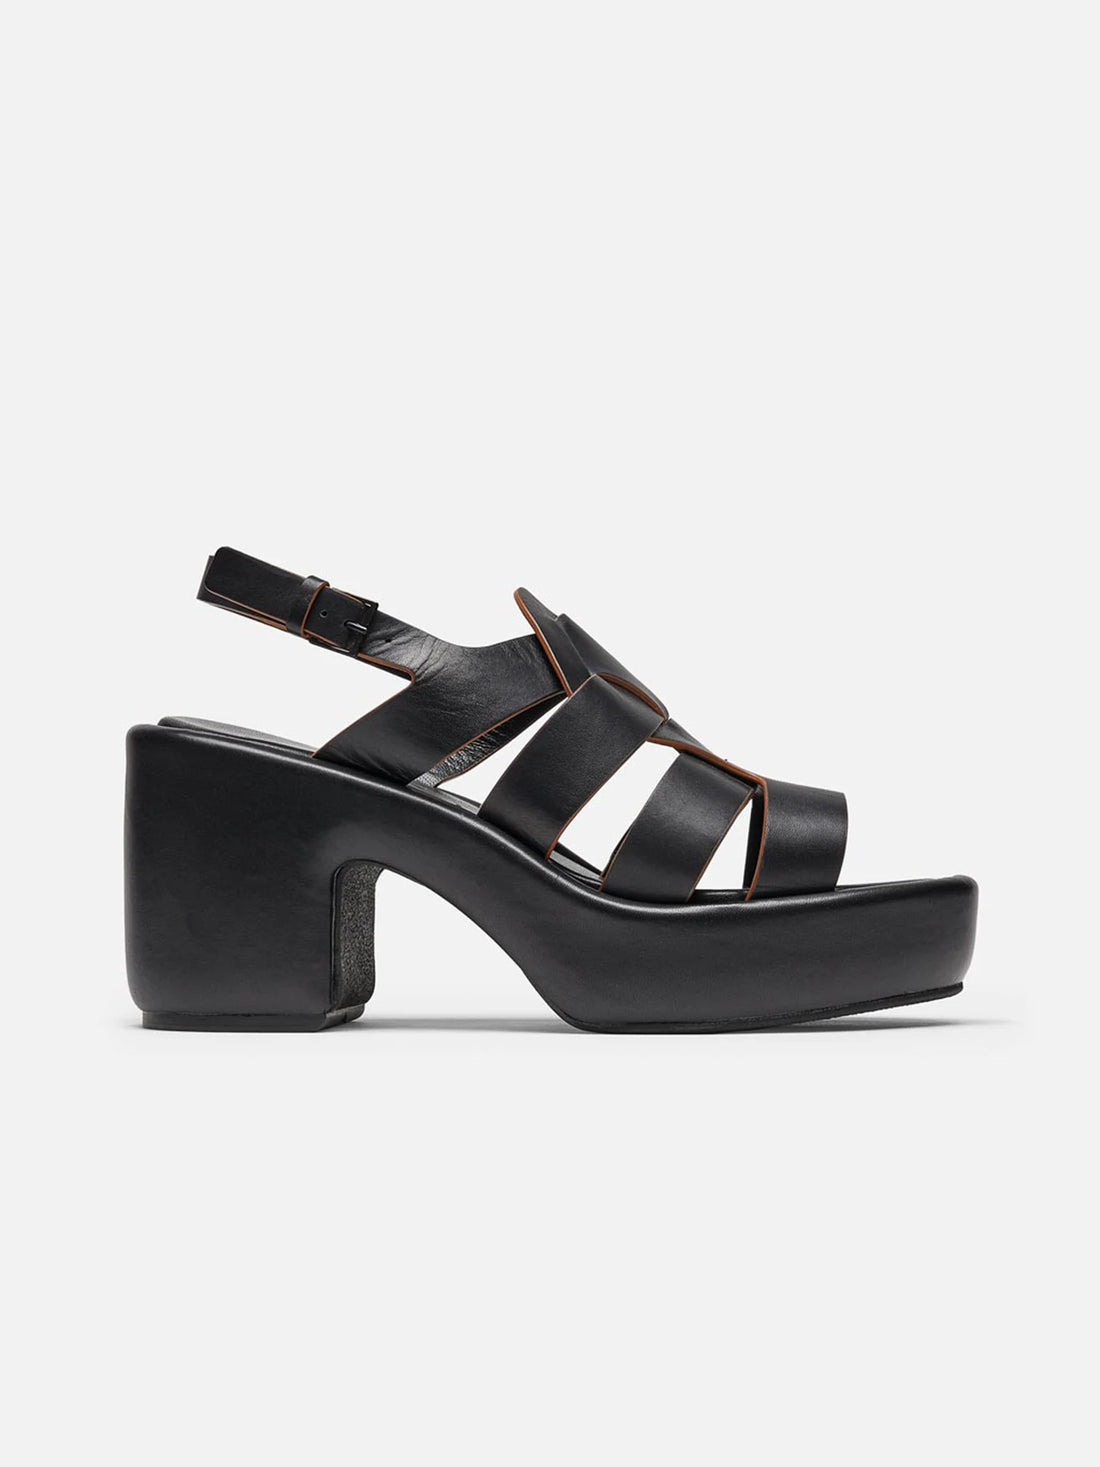 DIVINA sandals, black smooth calfskin || OUTLET